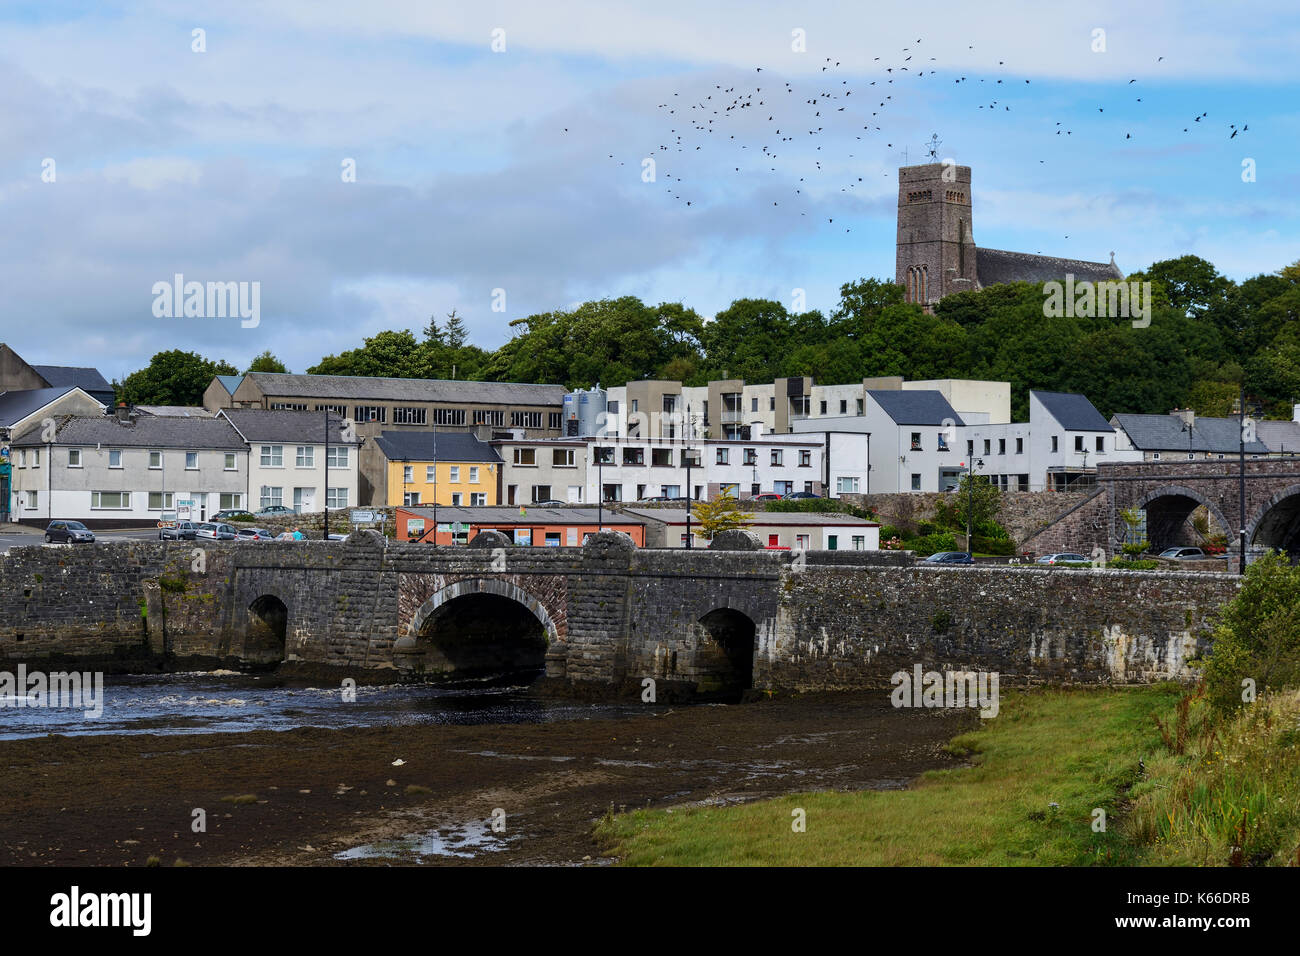 Los puentes que cruzan el río Newport con St Patrick's Church de fondo, Newport, en el condado de Mayo, República de Irlanda Foto de stock